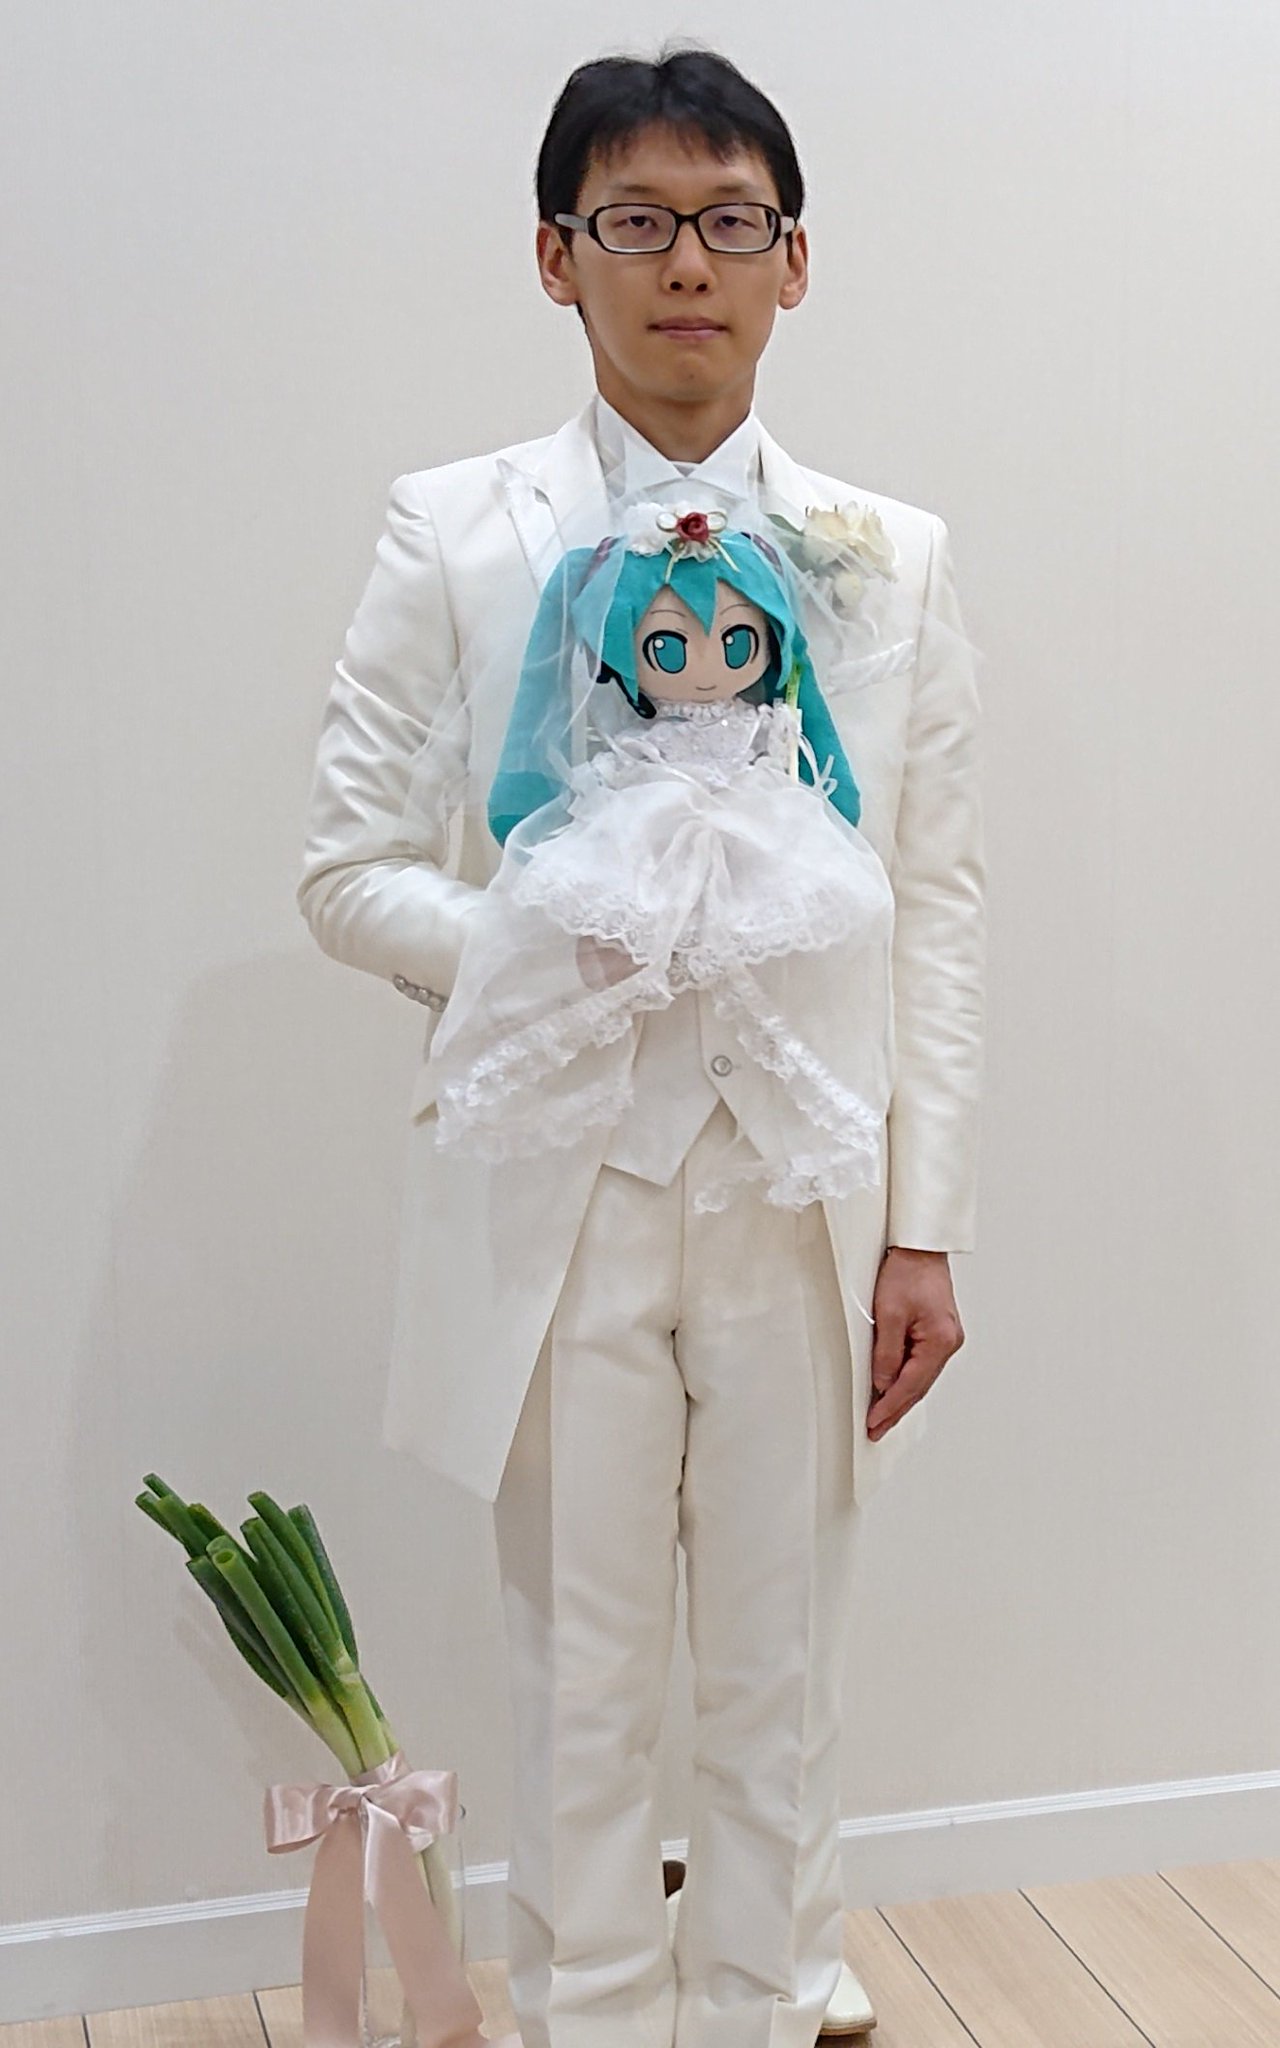 35歲的近藤於2017年與日本的著名虛擬歌姬初音未來「共諧連理」。(圖片擷取自近藤顯彥Twitter)